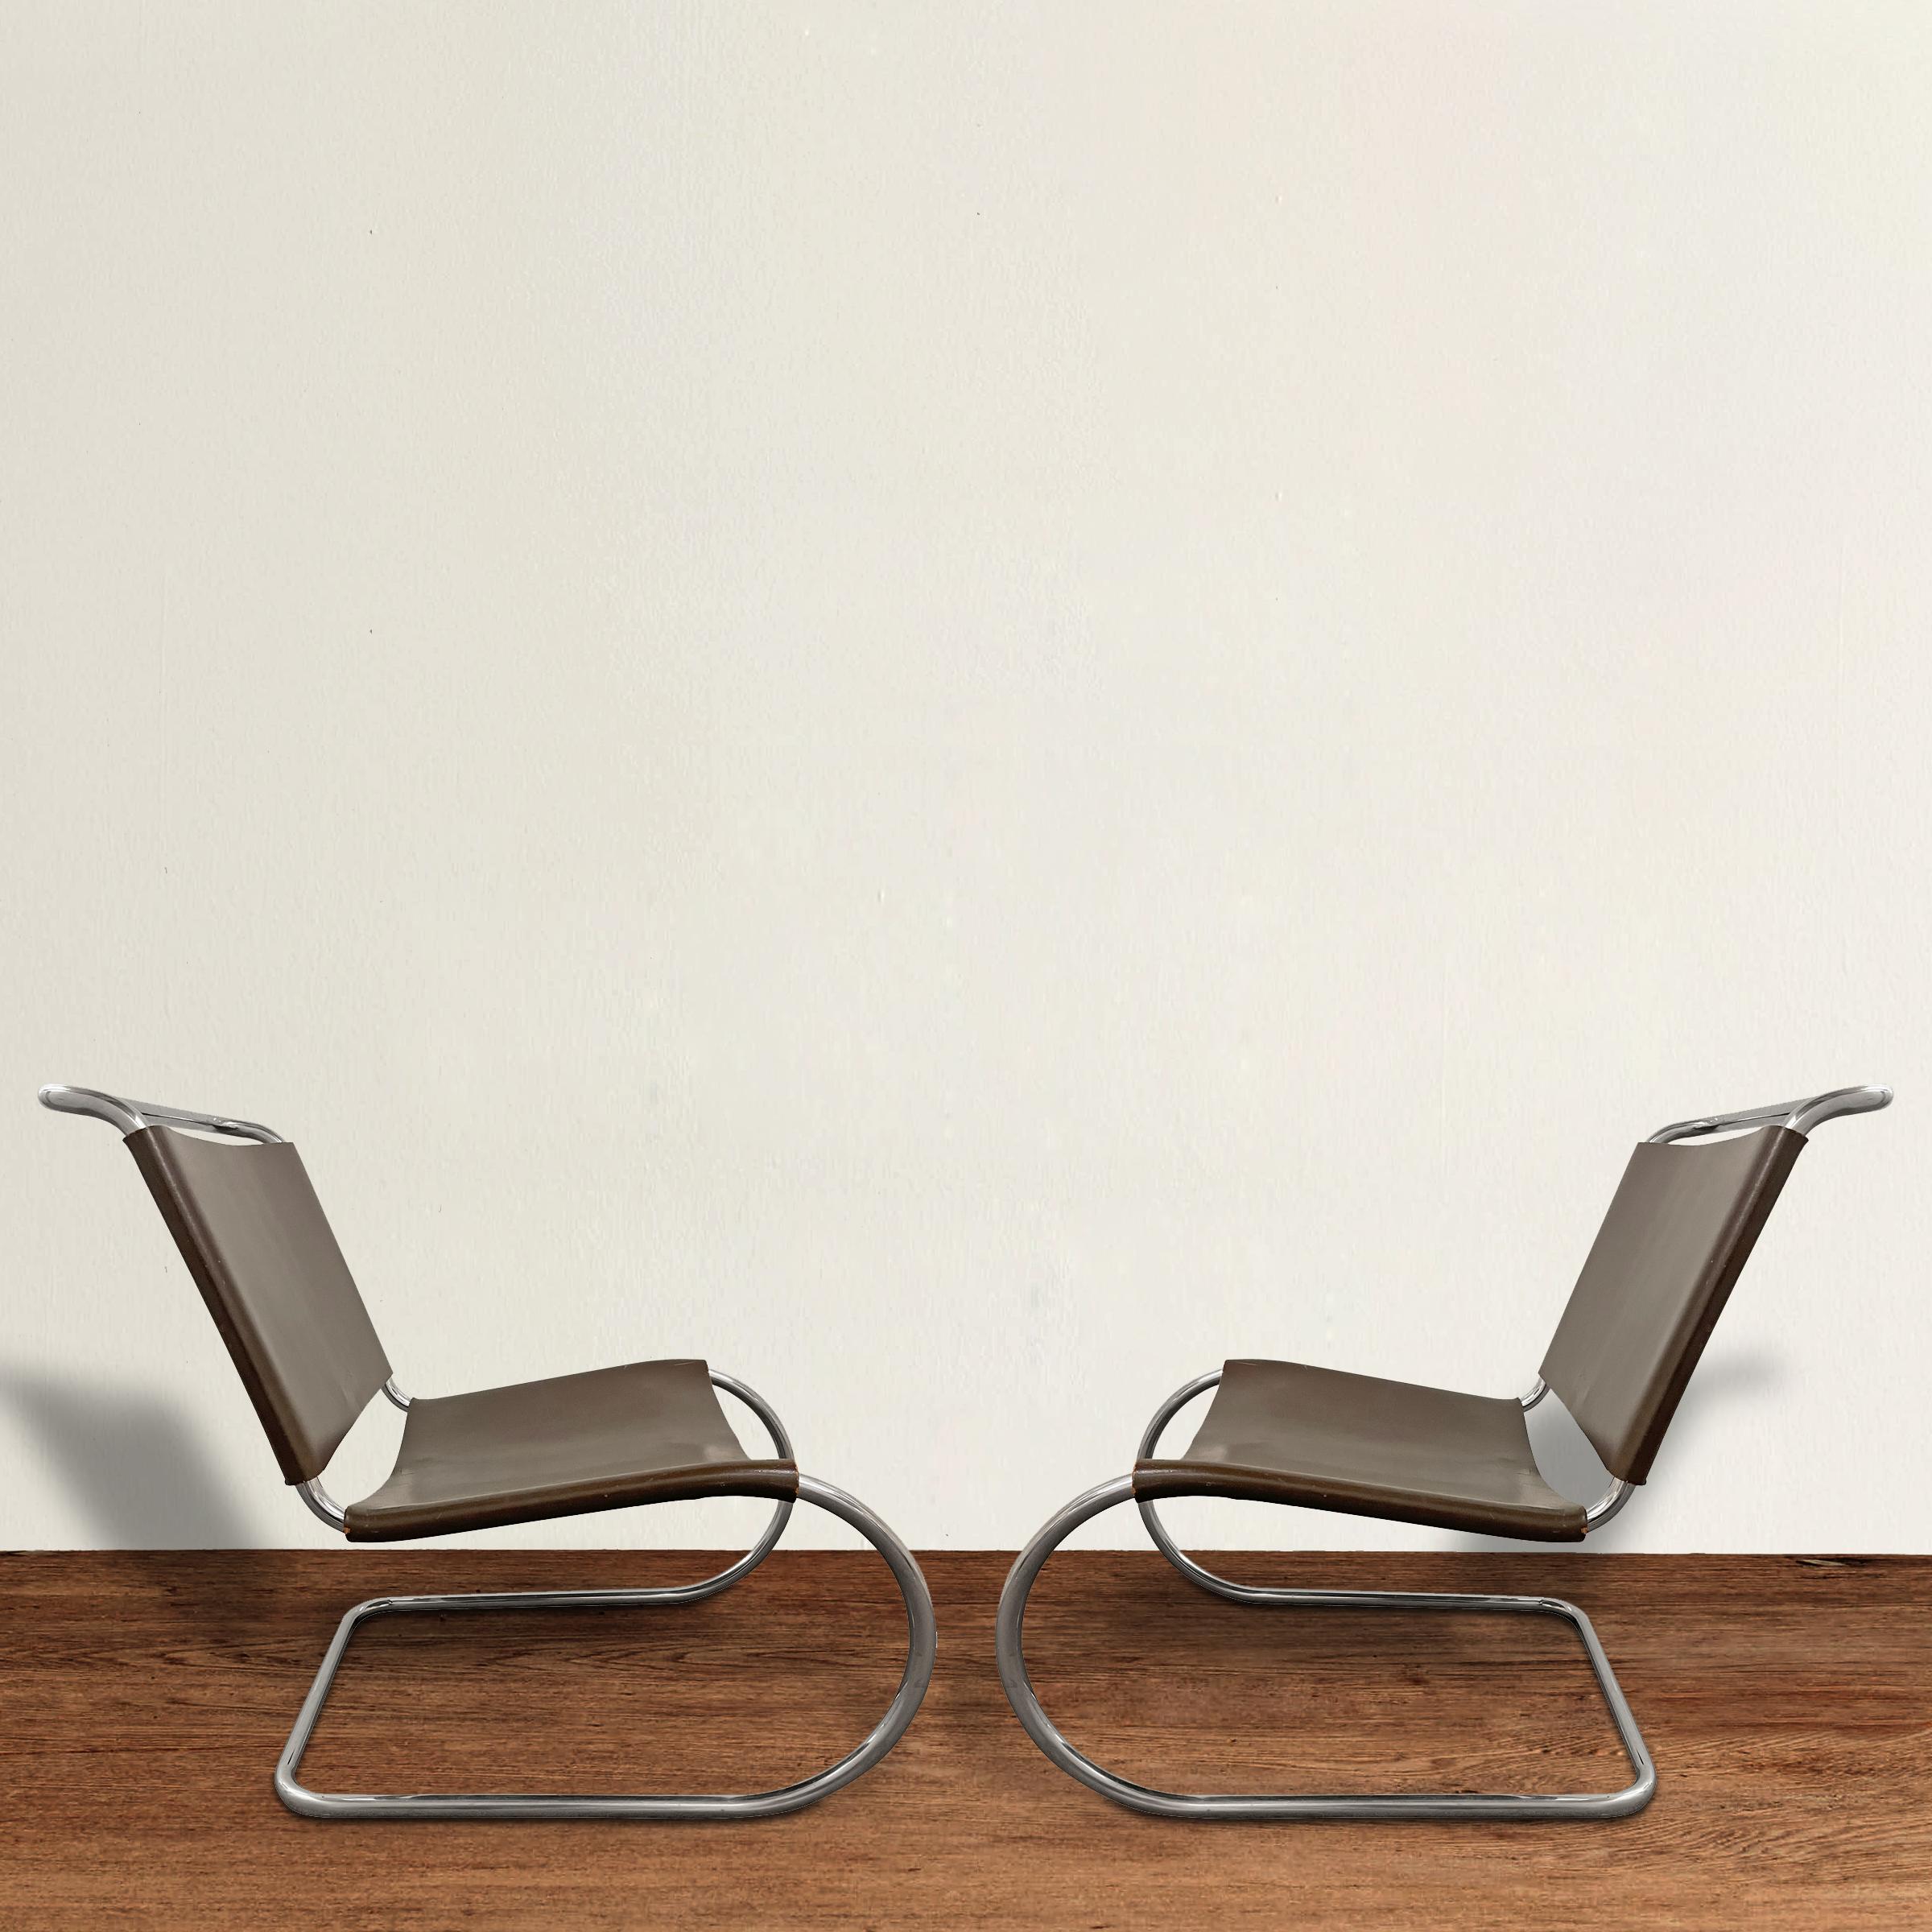 Ein seltenes Paar von Mies van der Rohe für Knoll MR 30/5 Lounge Chairs aus verchromten Stahlrohrrahmen und mit ihren originalen braunen Sattelledersitzen und -lehnen. Jeder Stuhl ist mit dem Originalaufkleber von Knoll versehen. Dieser Stuhl wird